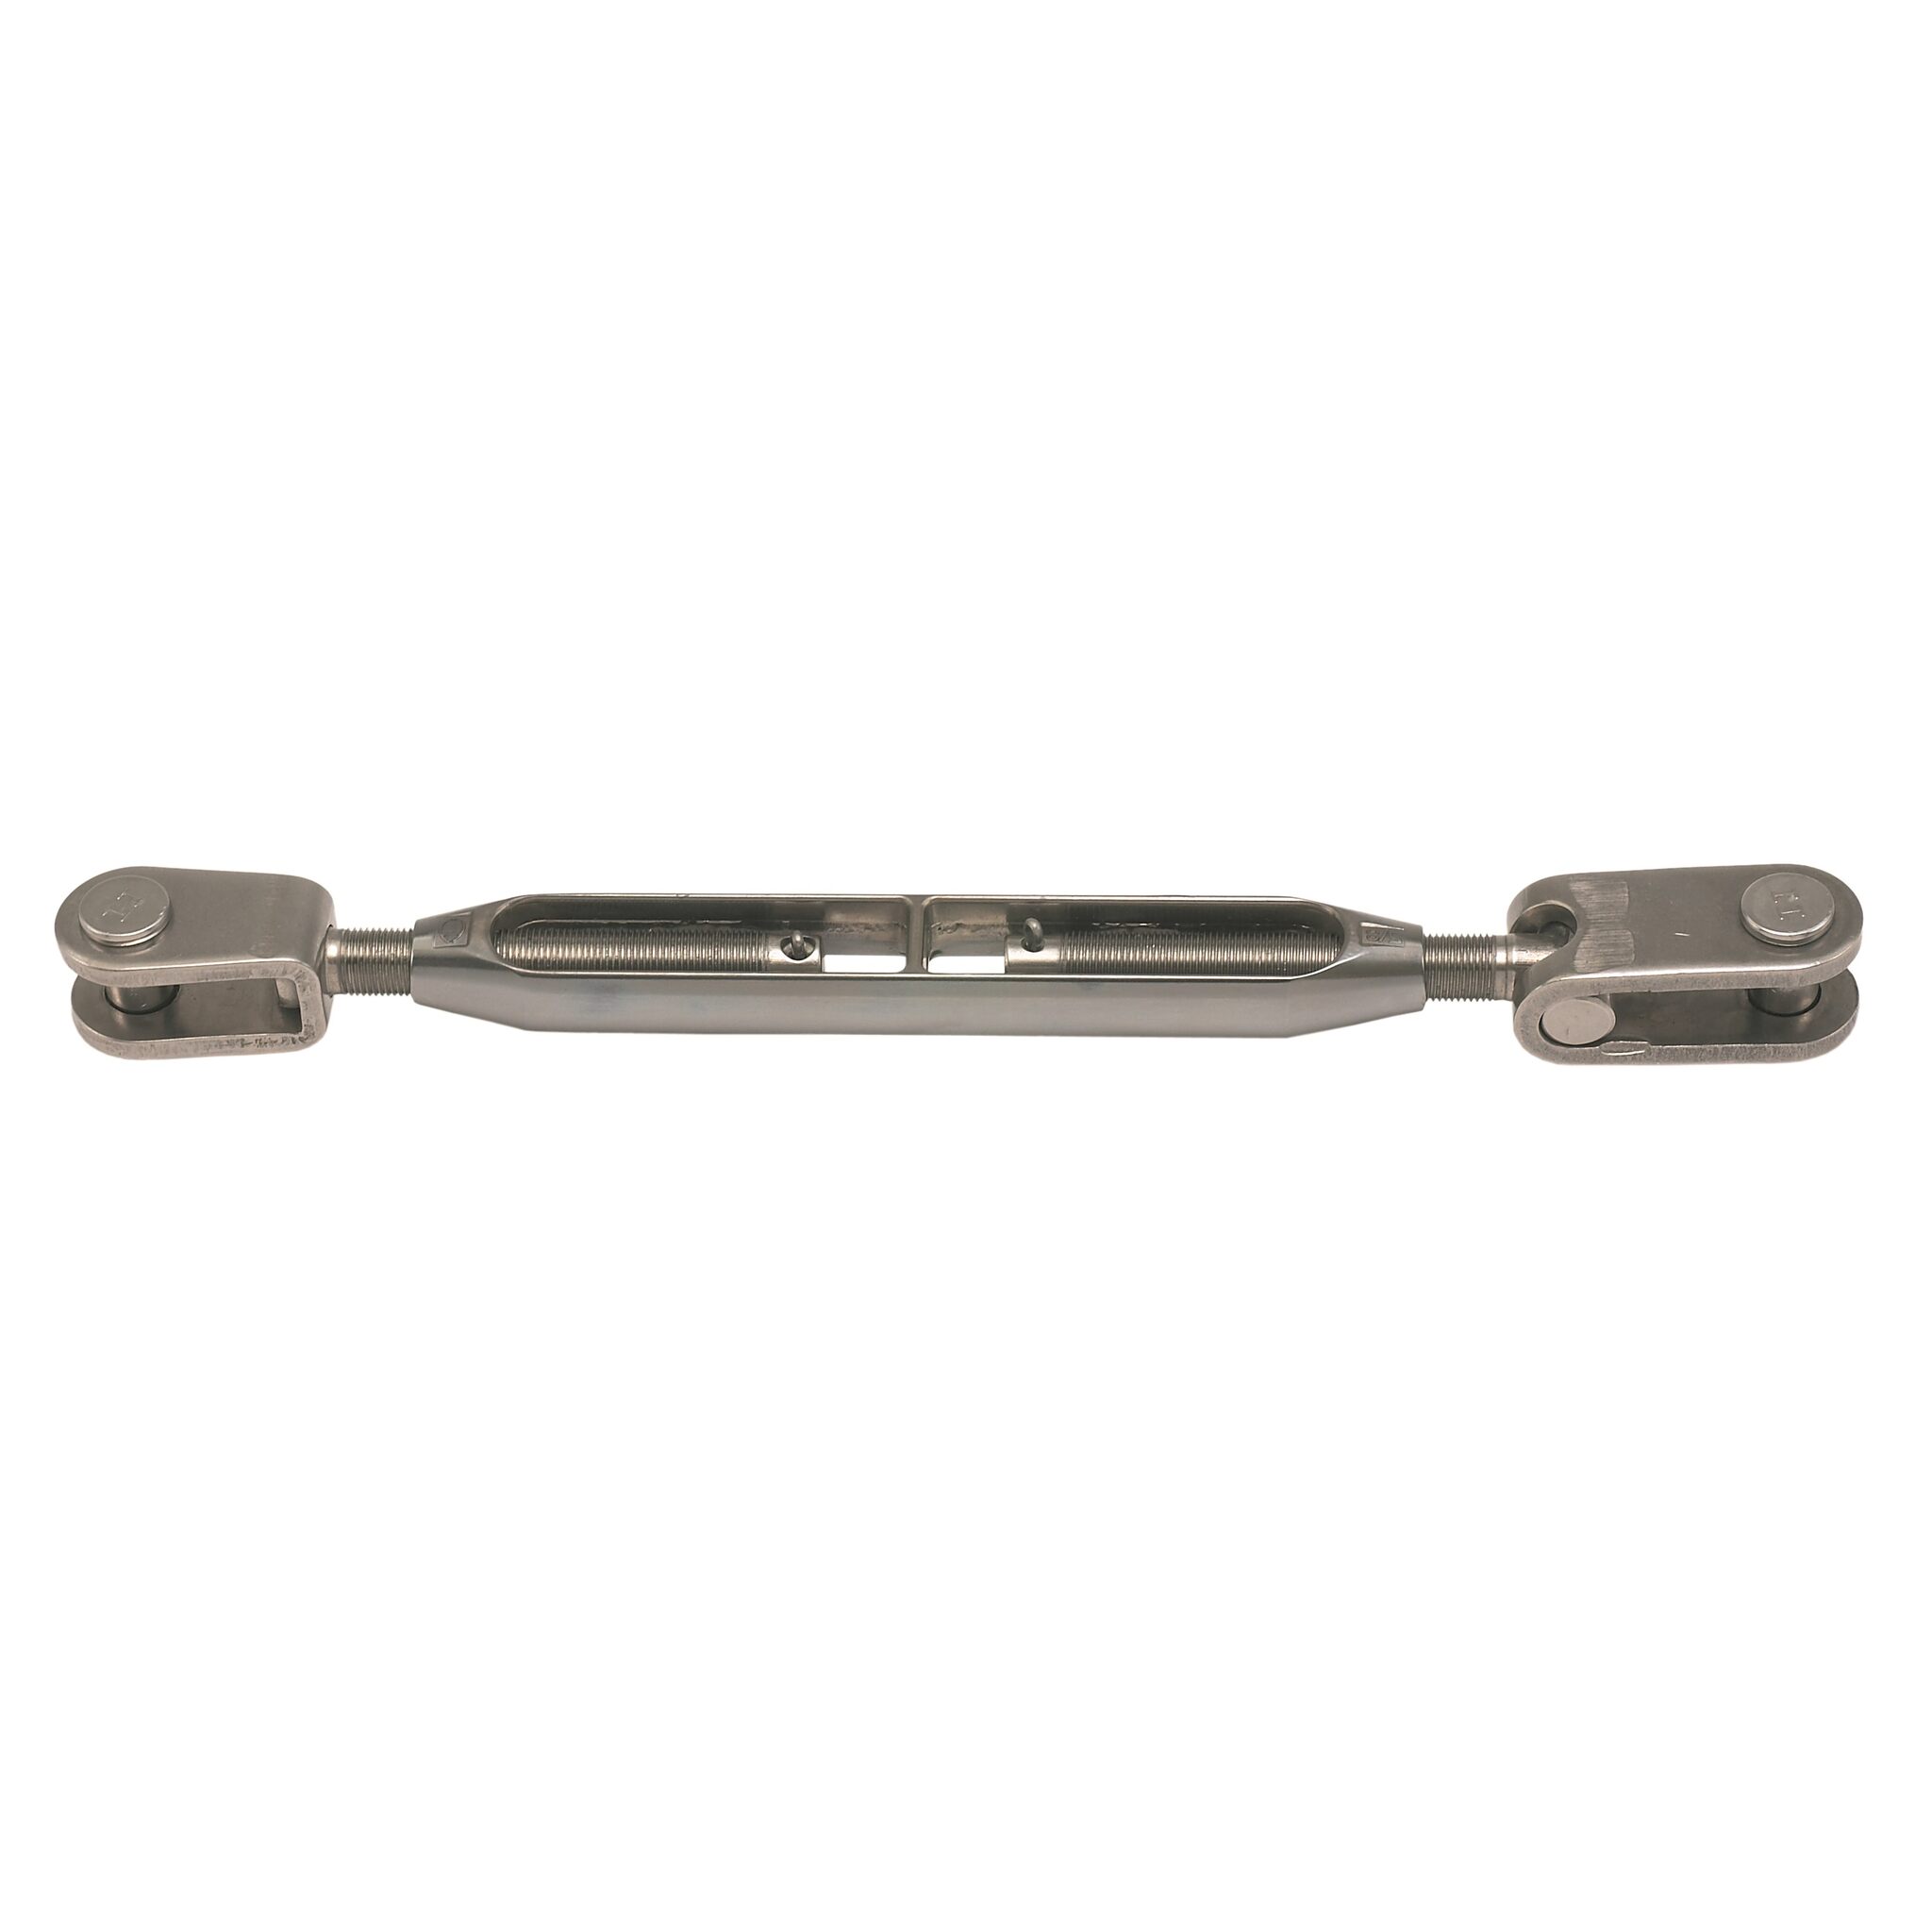 Shroud tensioner - toggle/fork